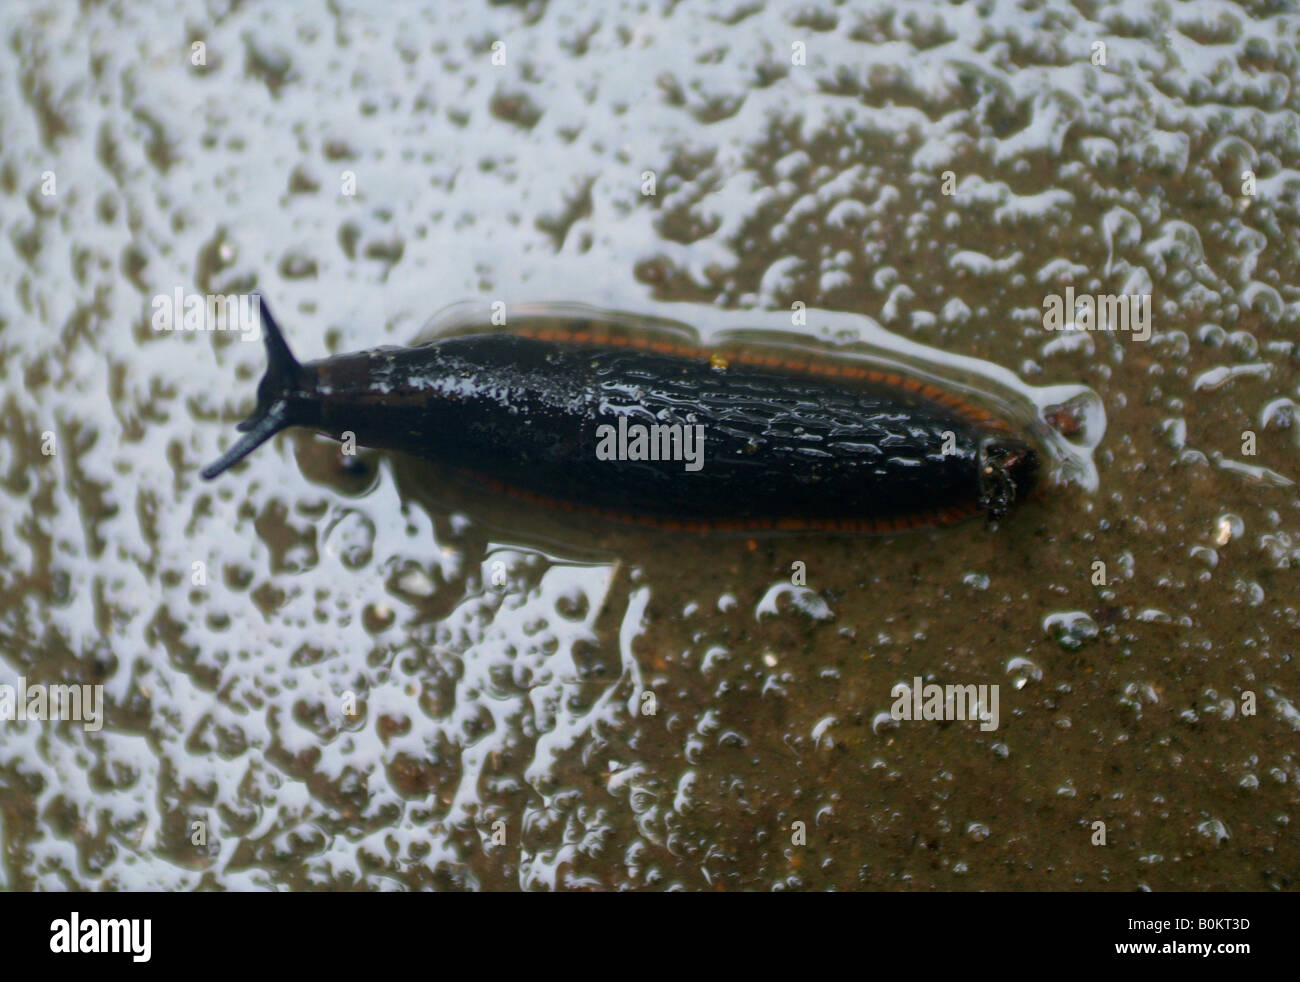 A garden slug crawling along a wet floor in the rain Stock Photo